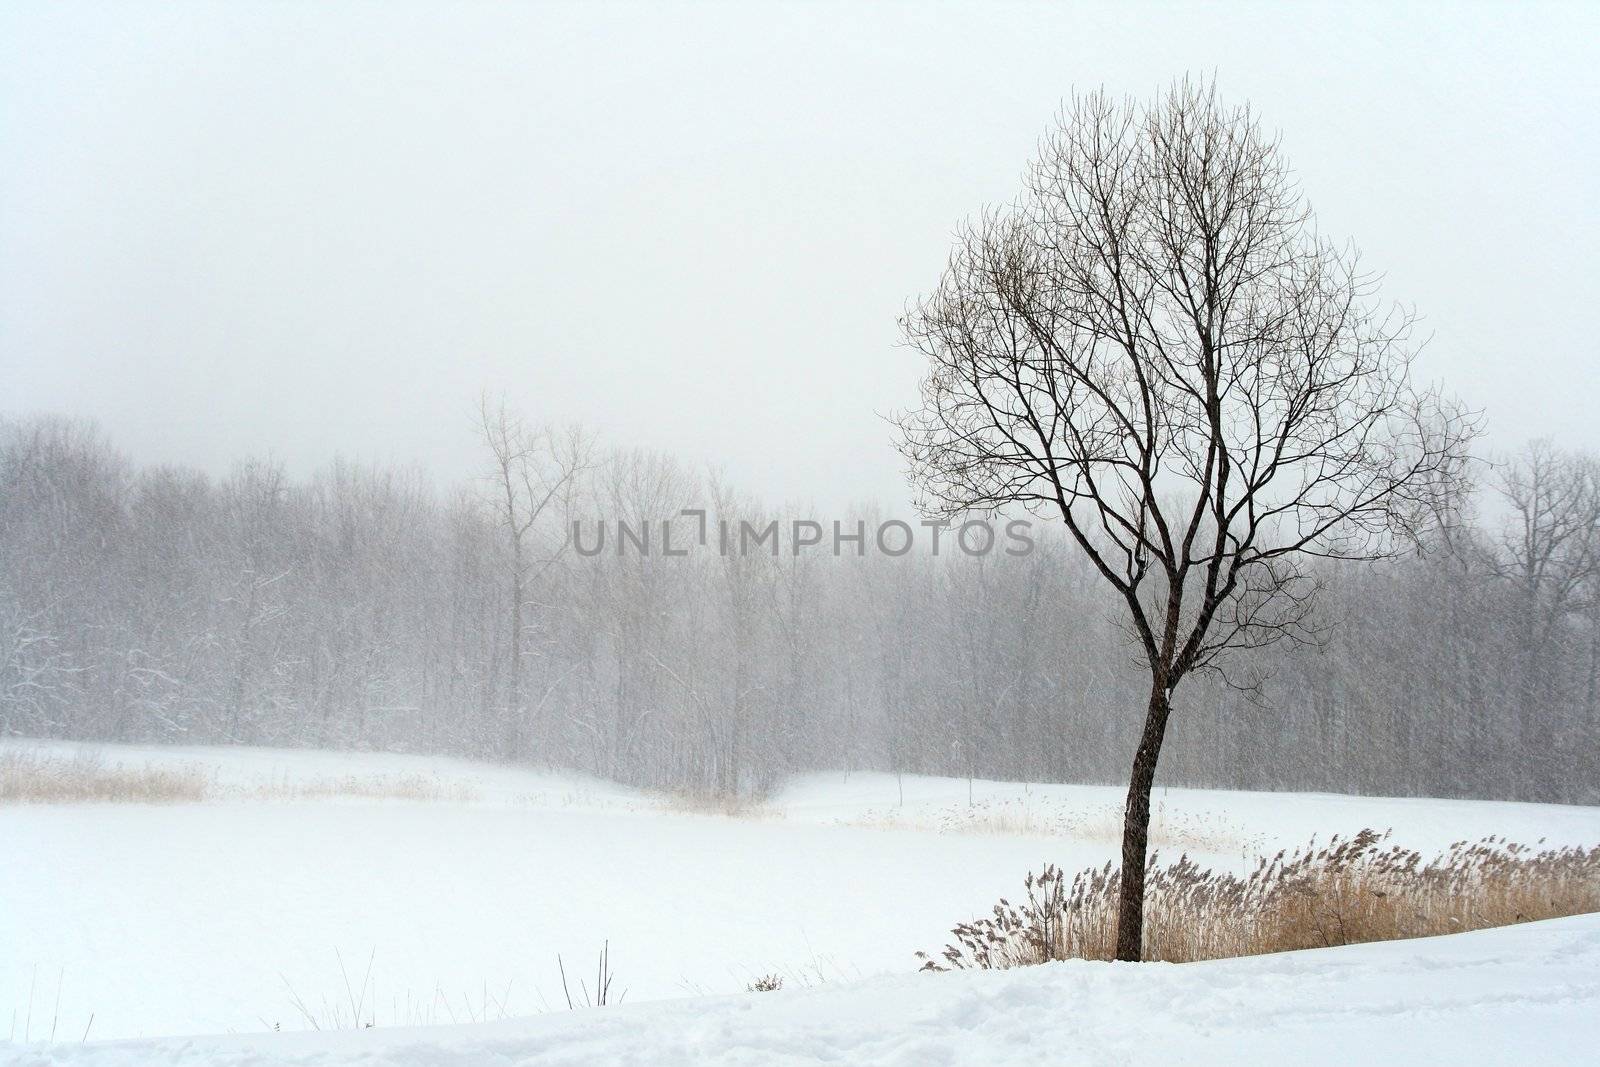 Tree in misty haze of winter blizzard. Beautiful winter landscape.